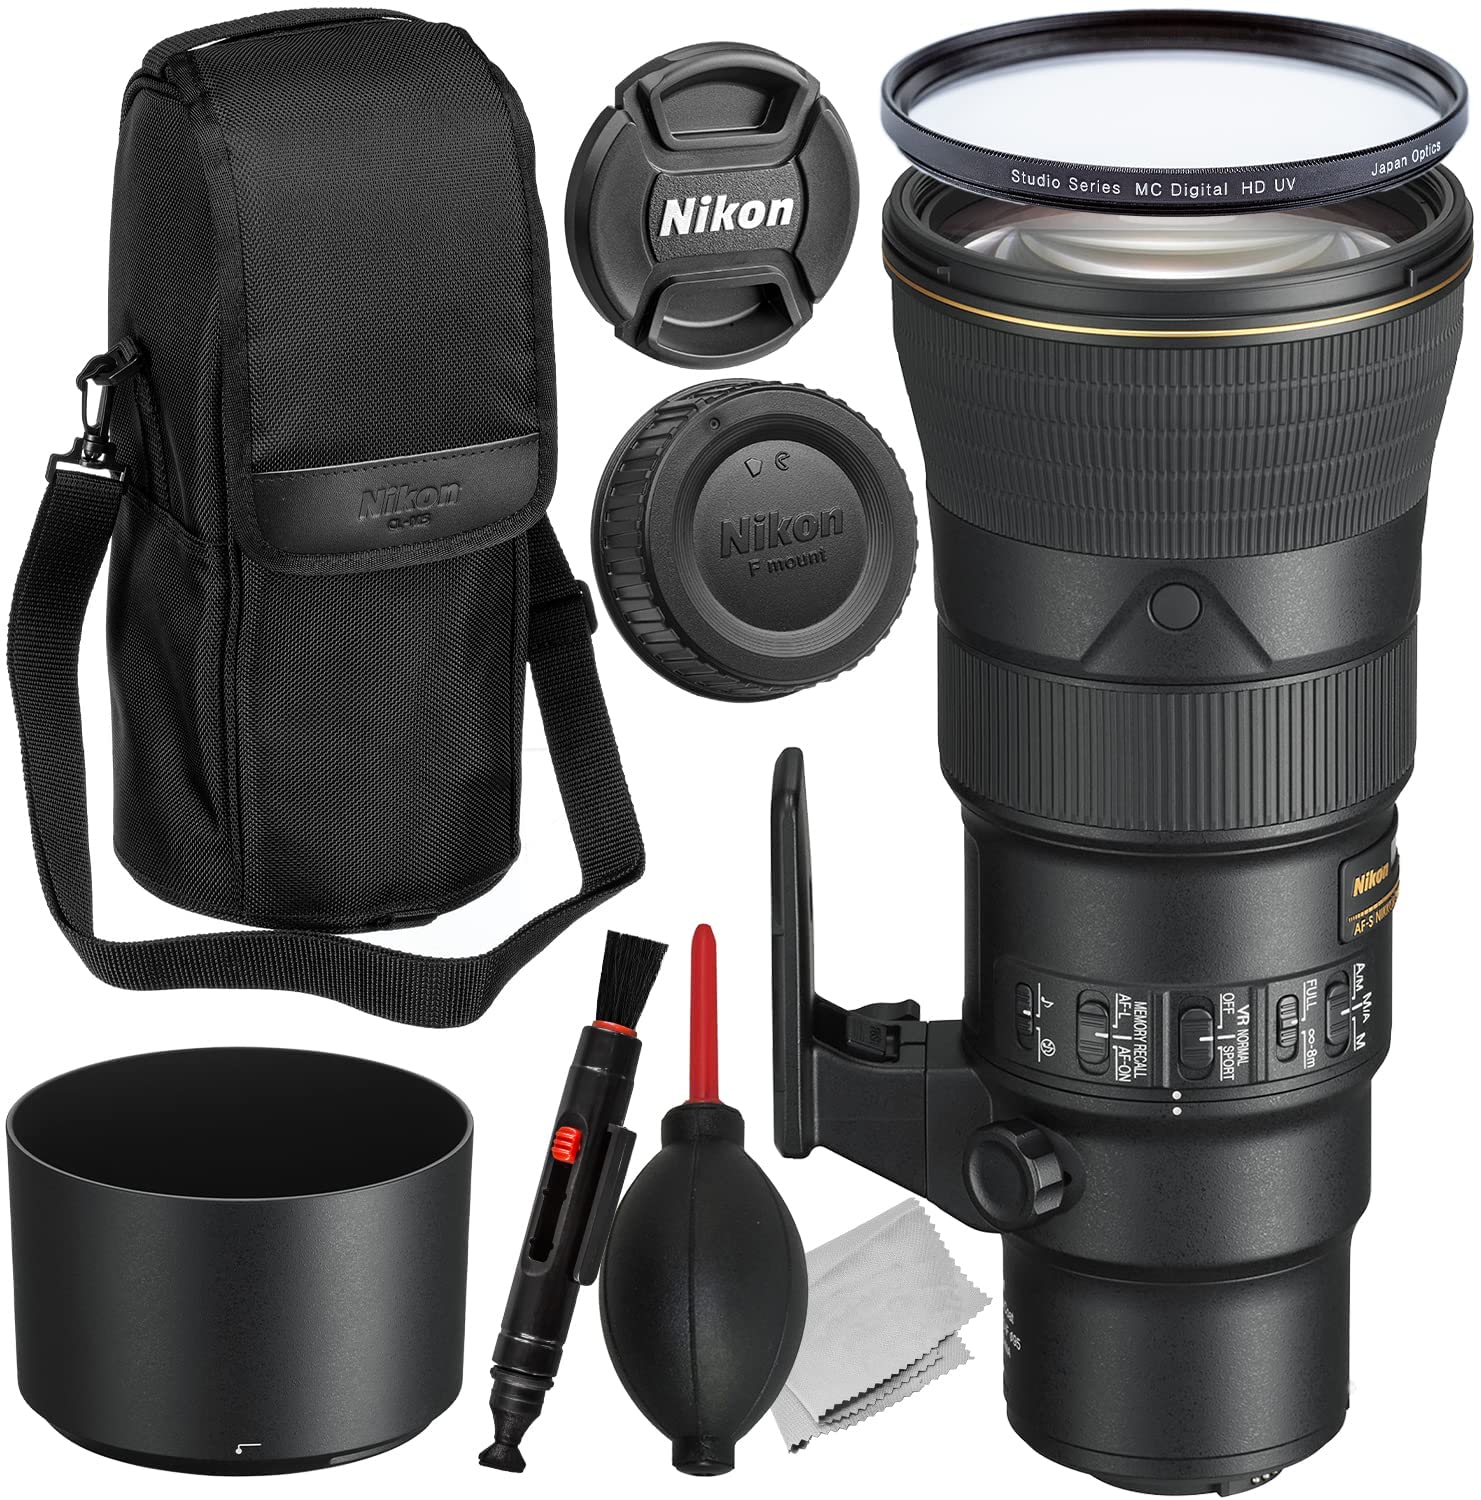 Nikon AF-S NIKKOR 500mm f/5.6E PF ED VR Lens + Multi-Coated Digital HD UV Filter, Lens/Gadget Maintenance Pen, Manufacturer’s Accessories & More (10pc Bundle)